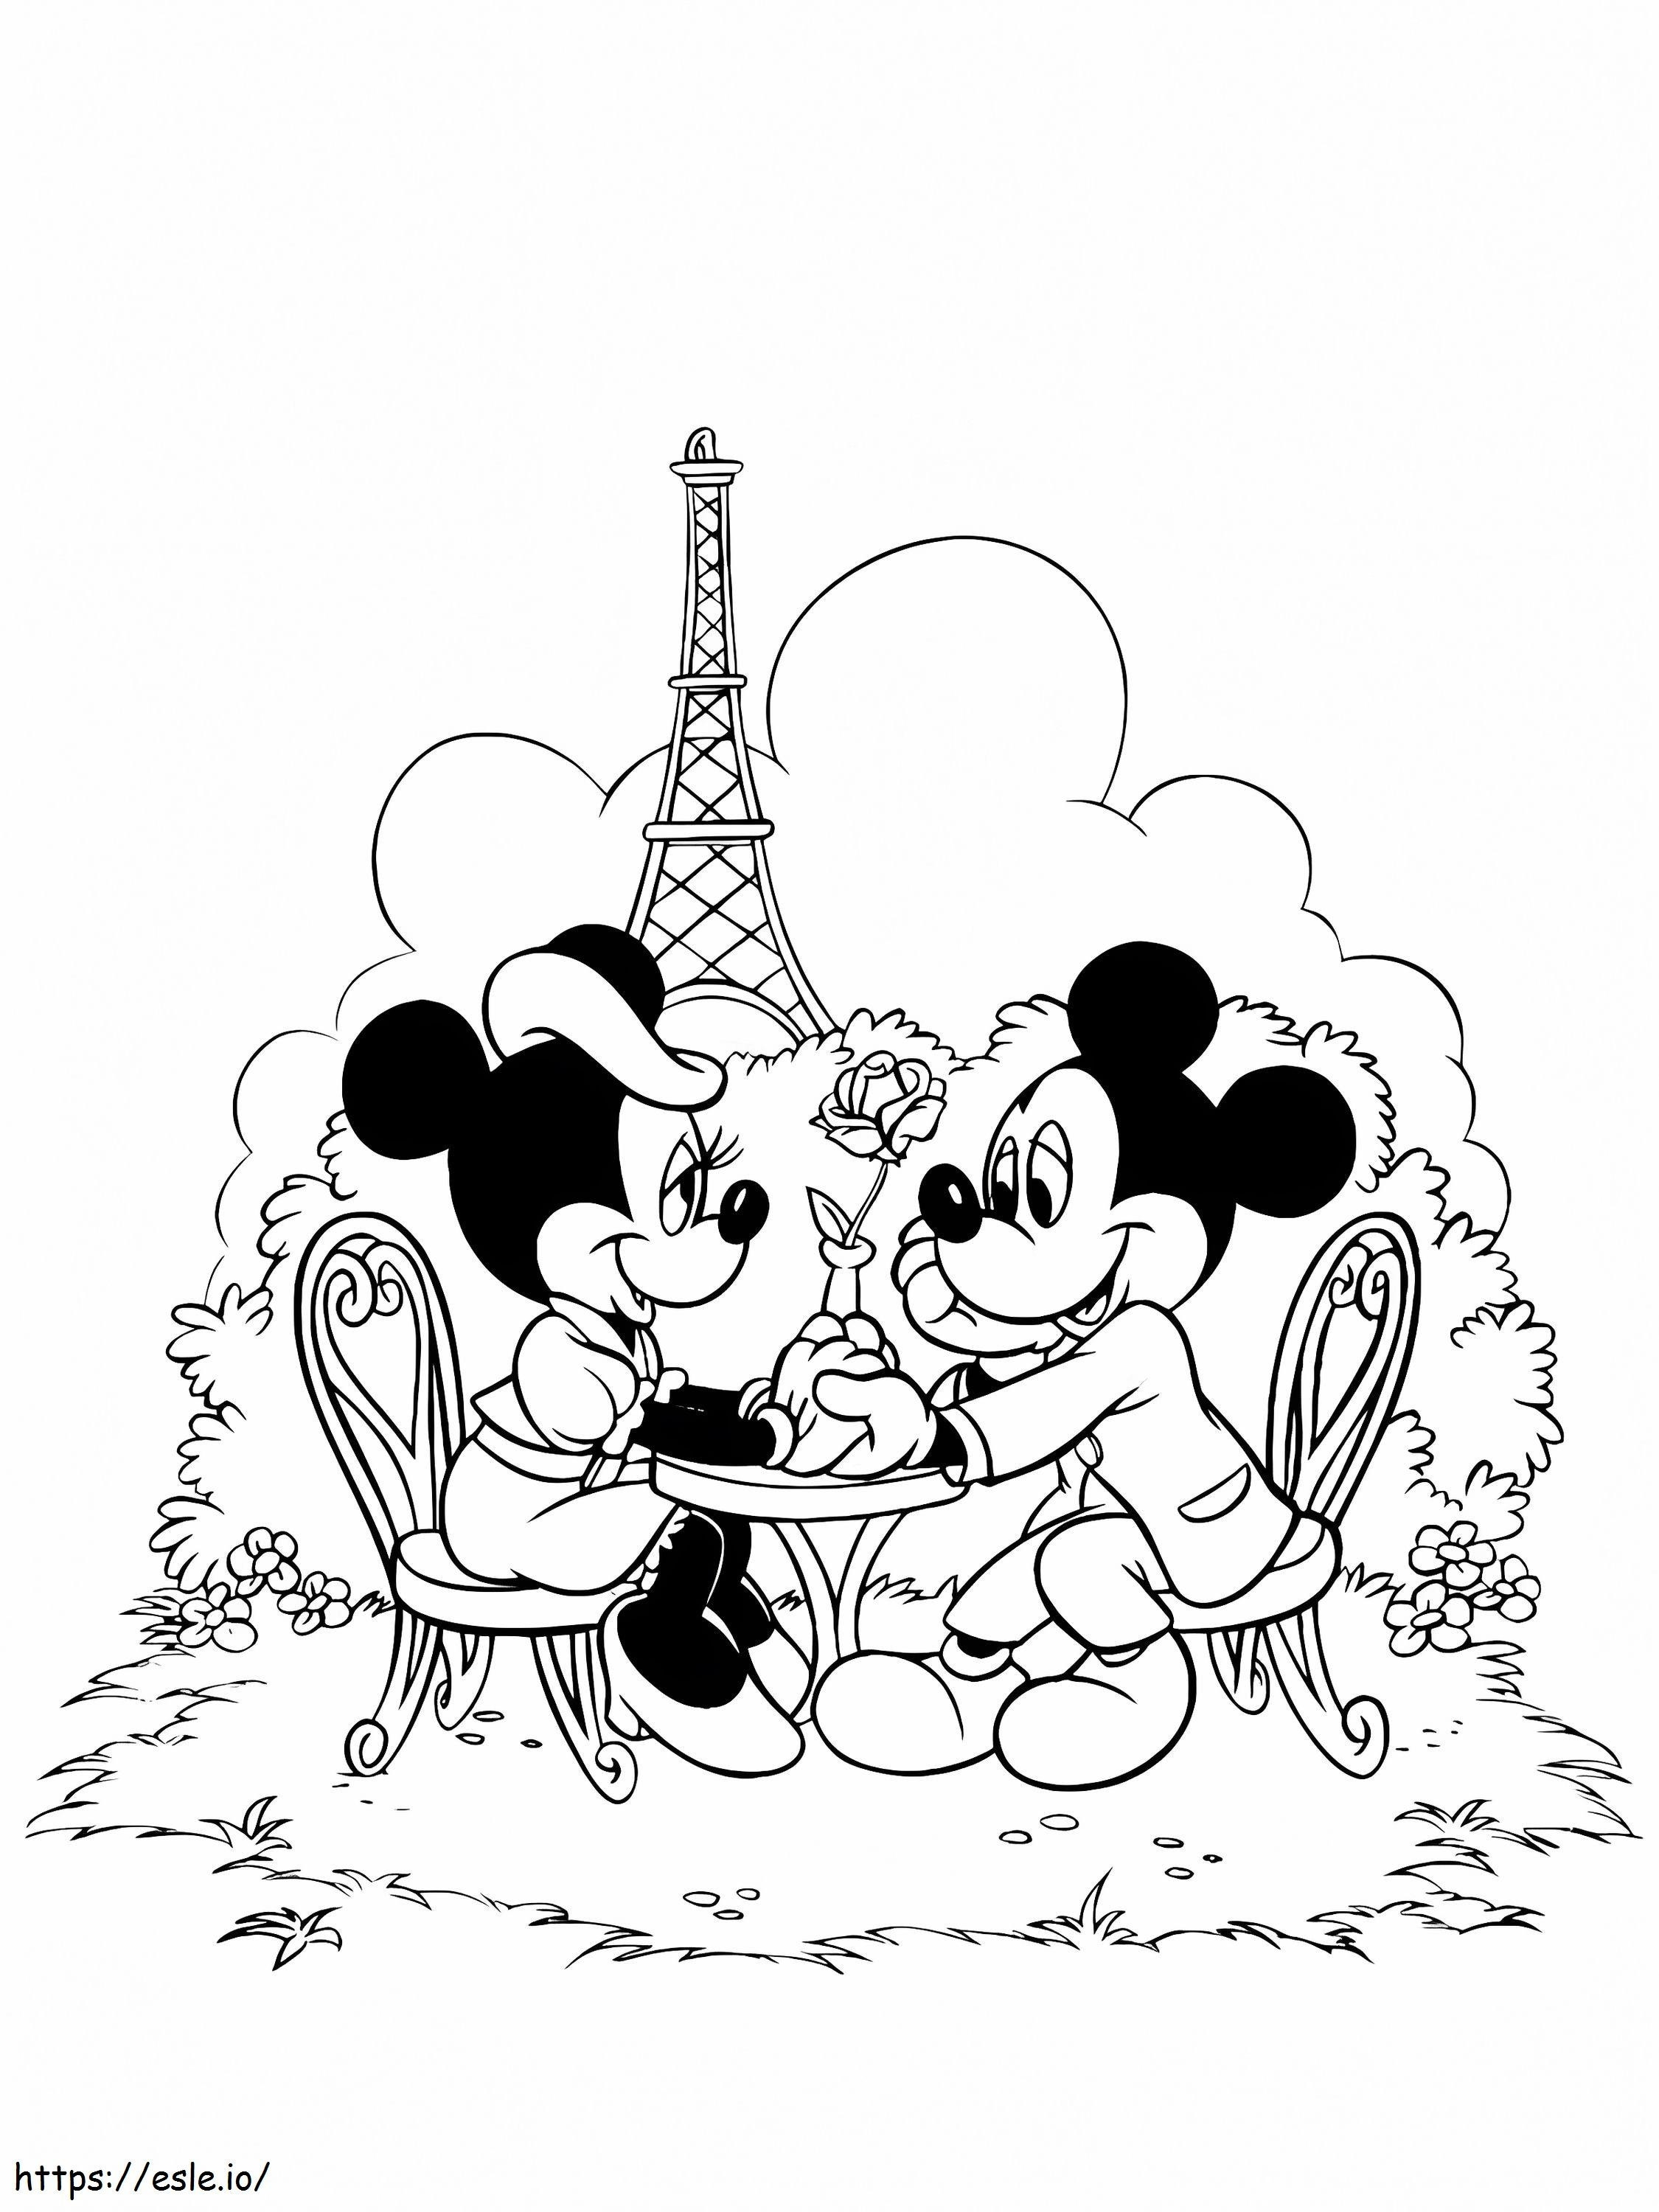 Mickey Mouse e Minnie Mouse na cidade de Paris para colorir